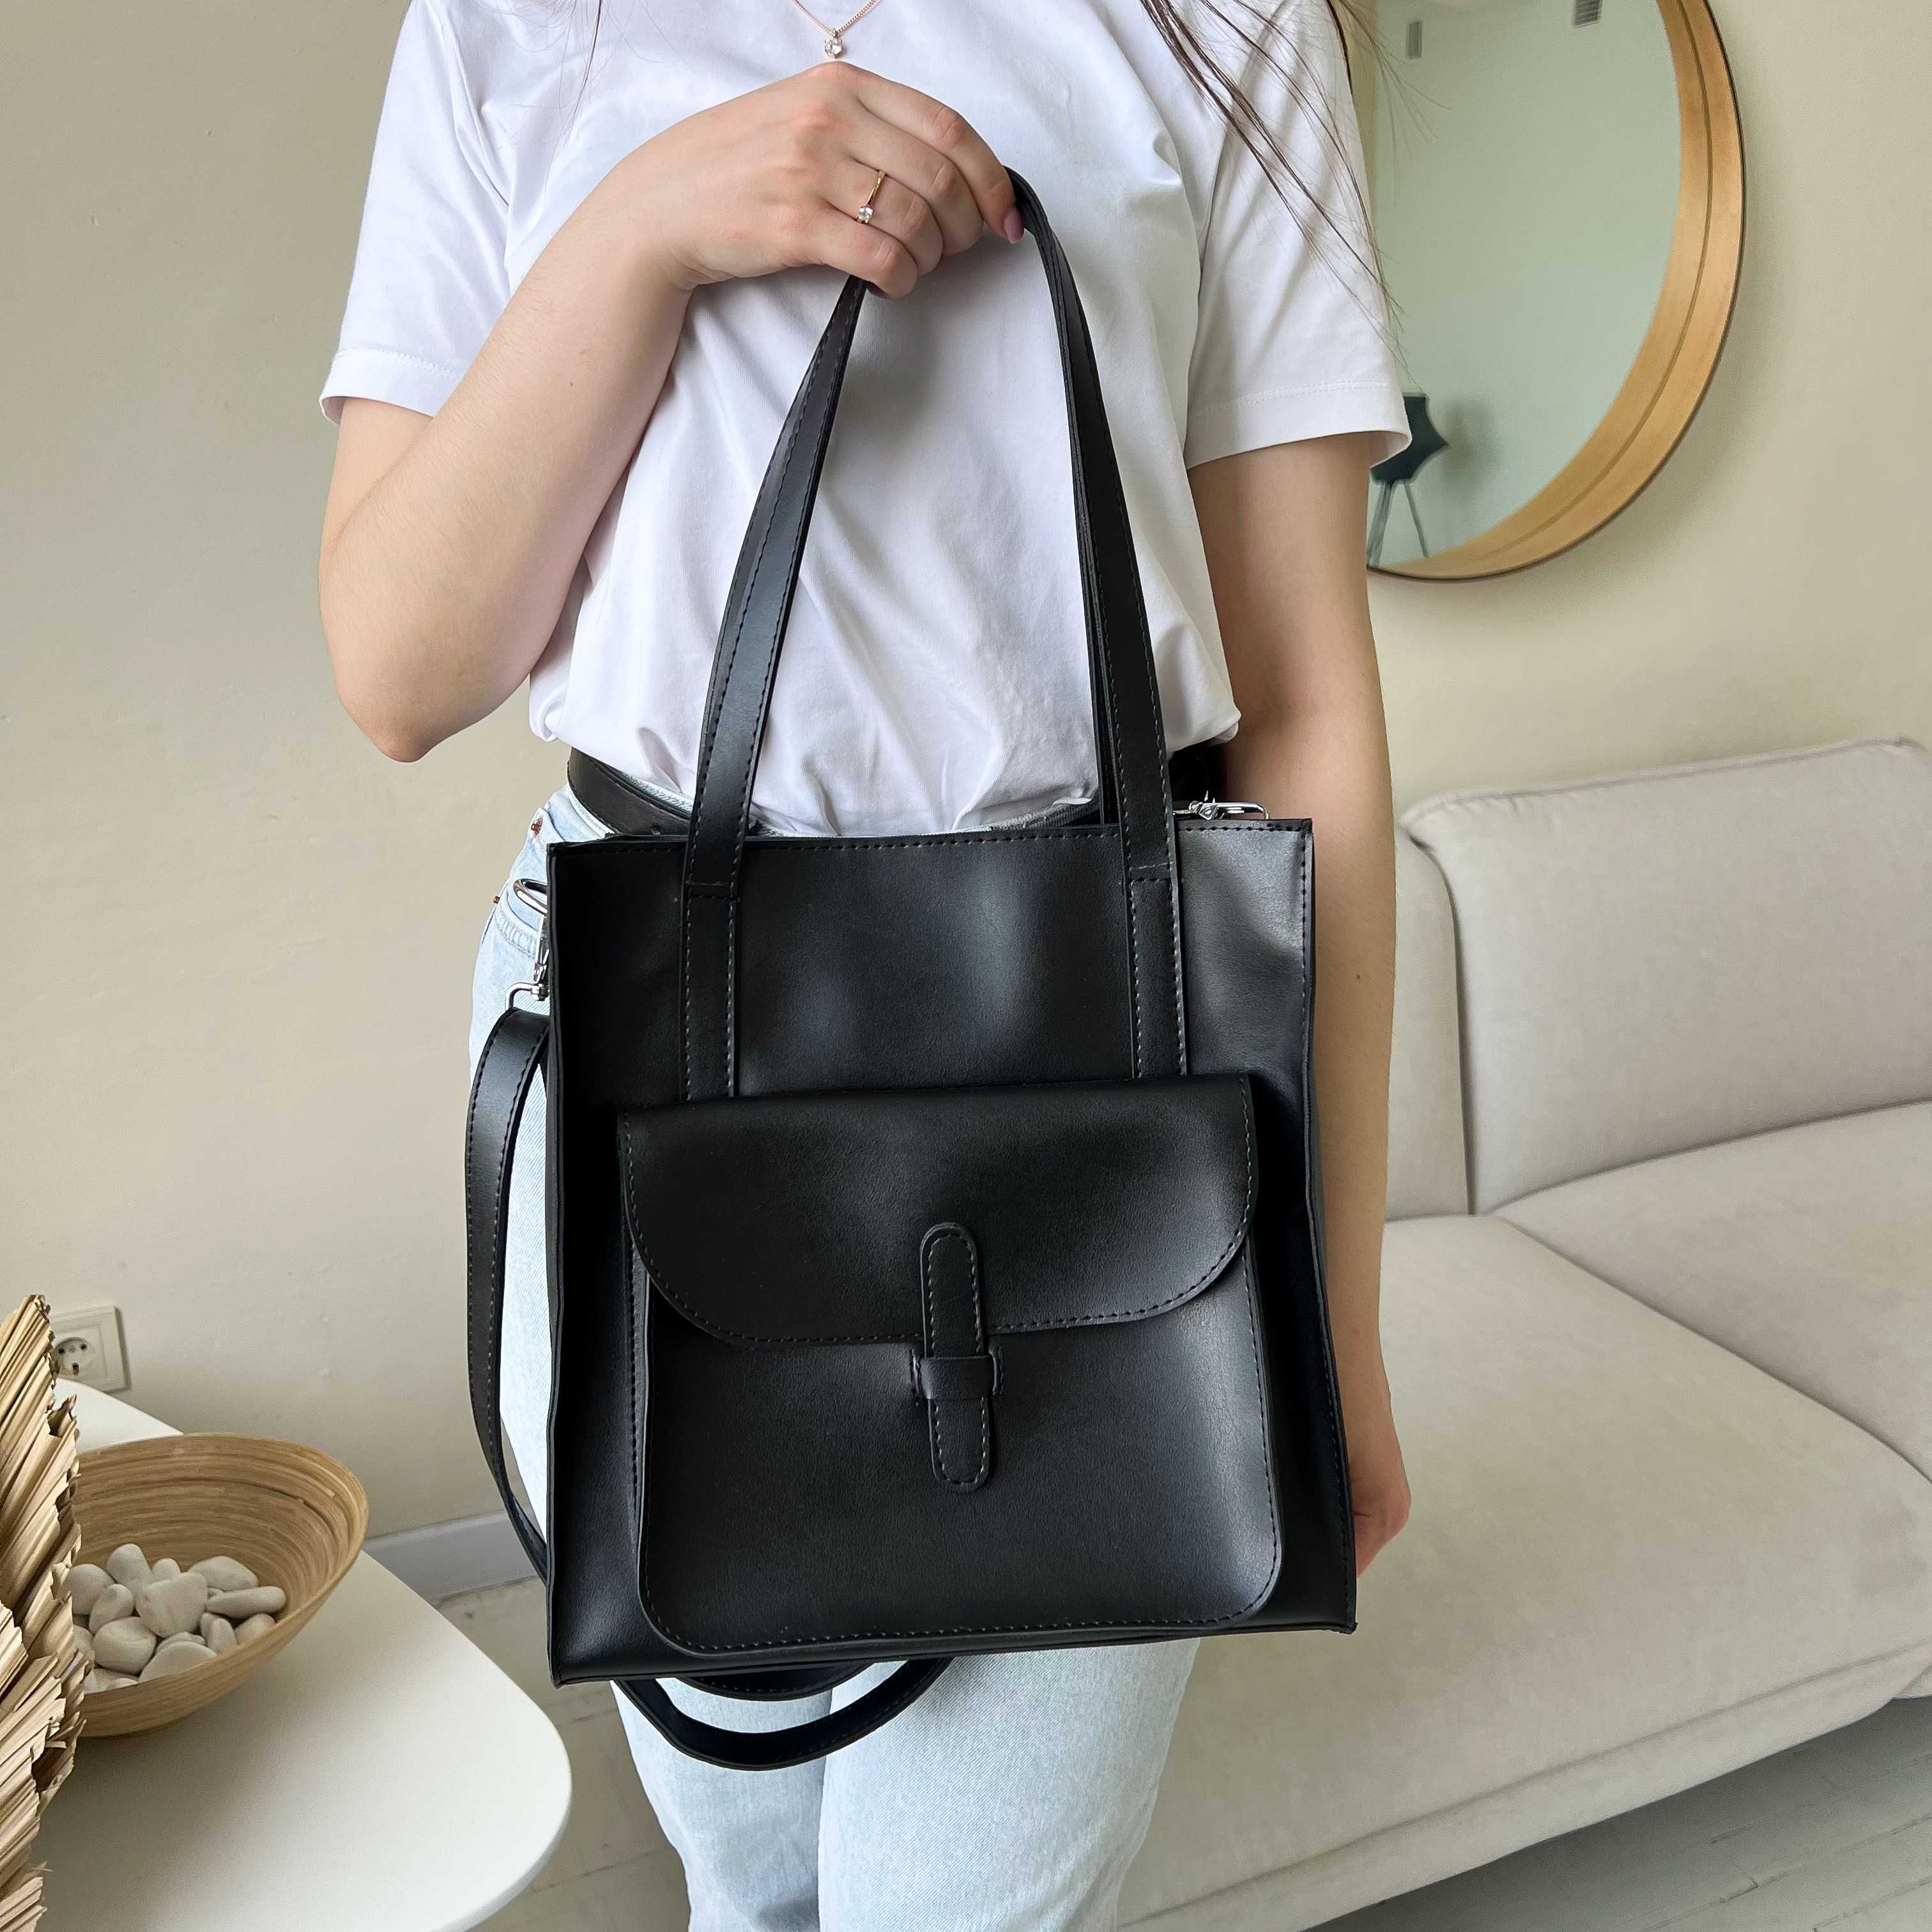 Жіноча сумка шопер чорного кольору з еко-шкіри на навчання, роботу